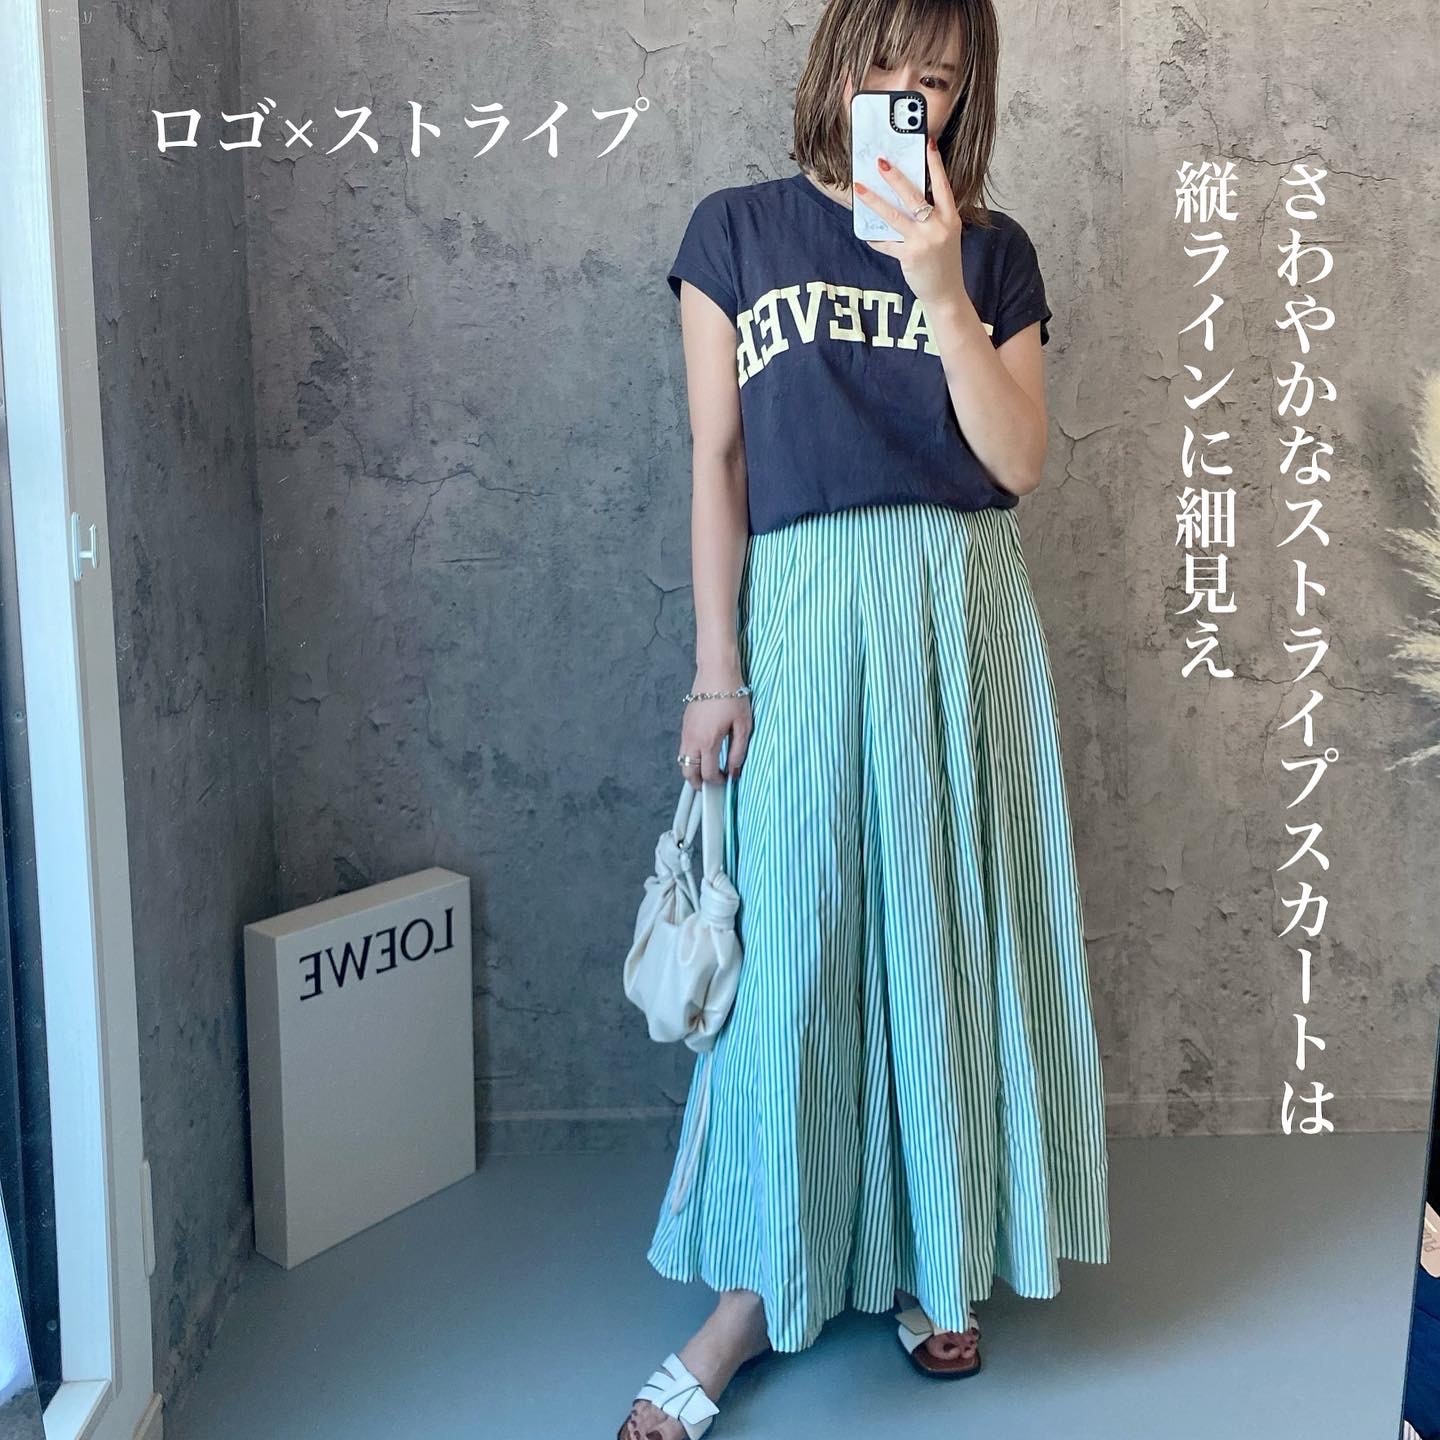 夏物セール☆110 新品 スカート - スカート